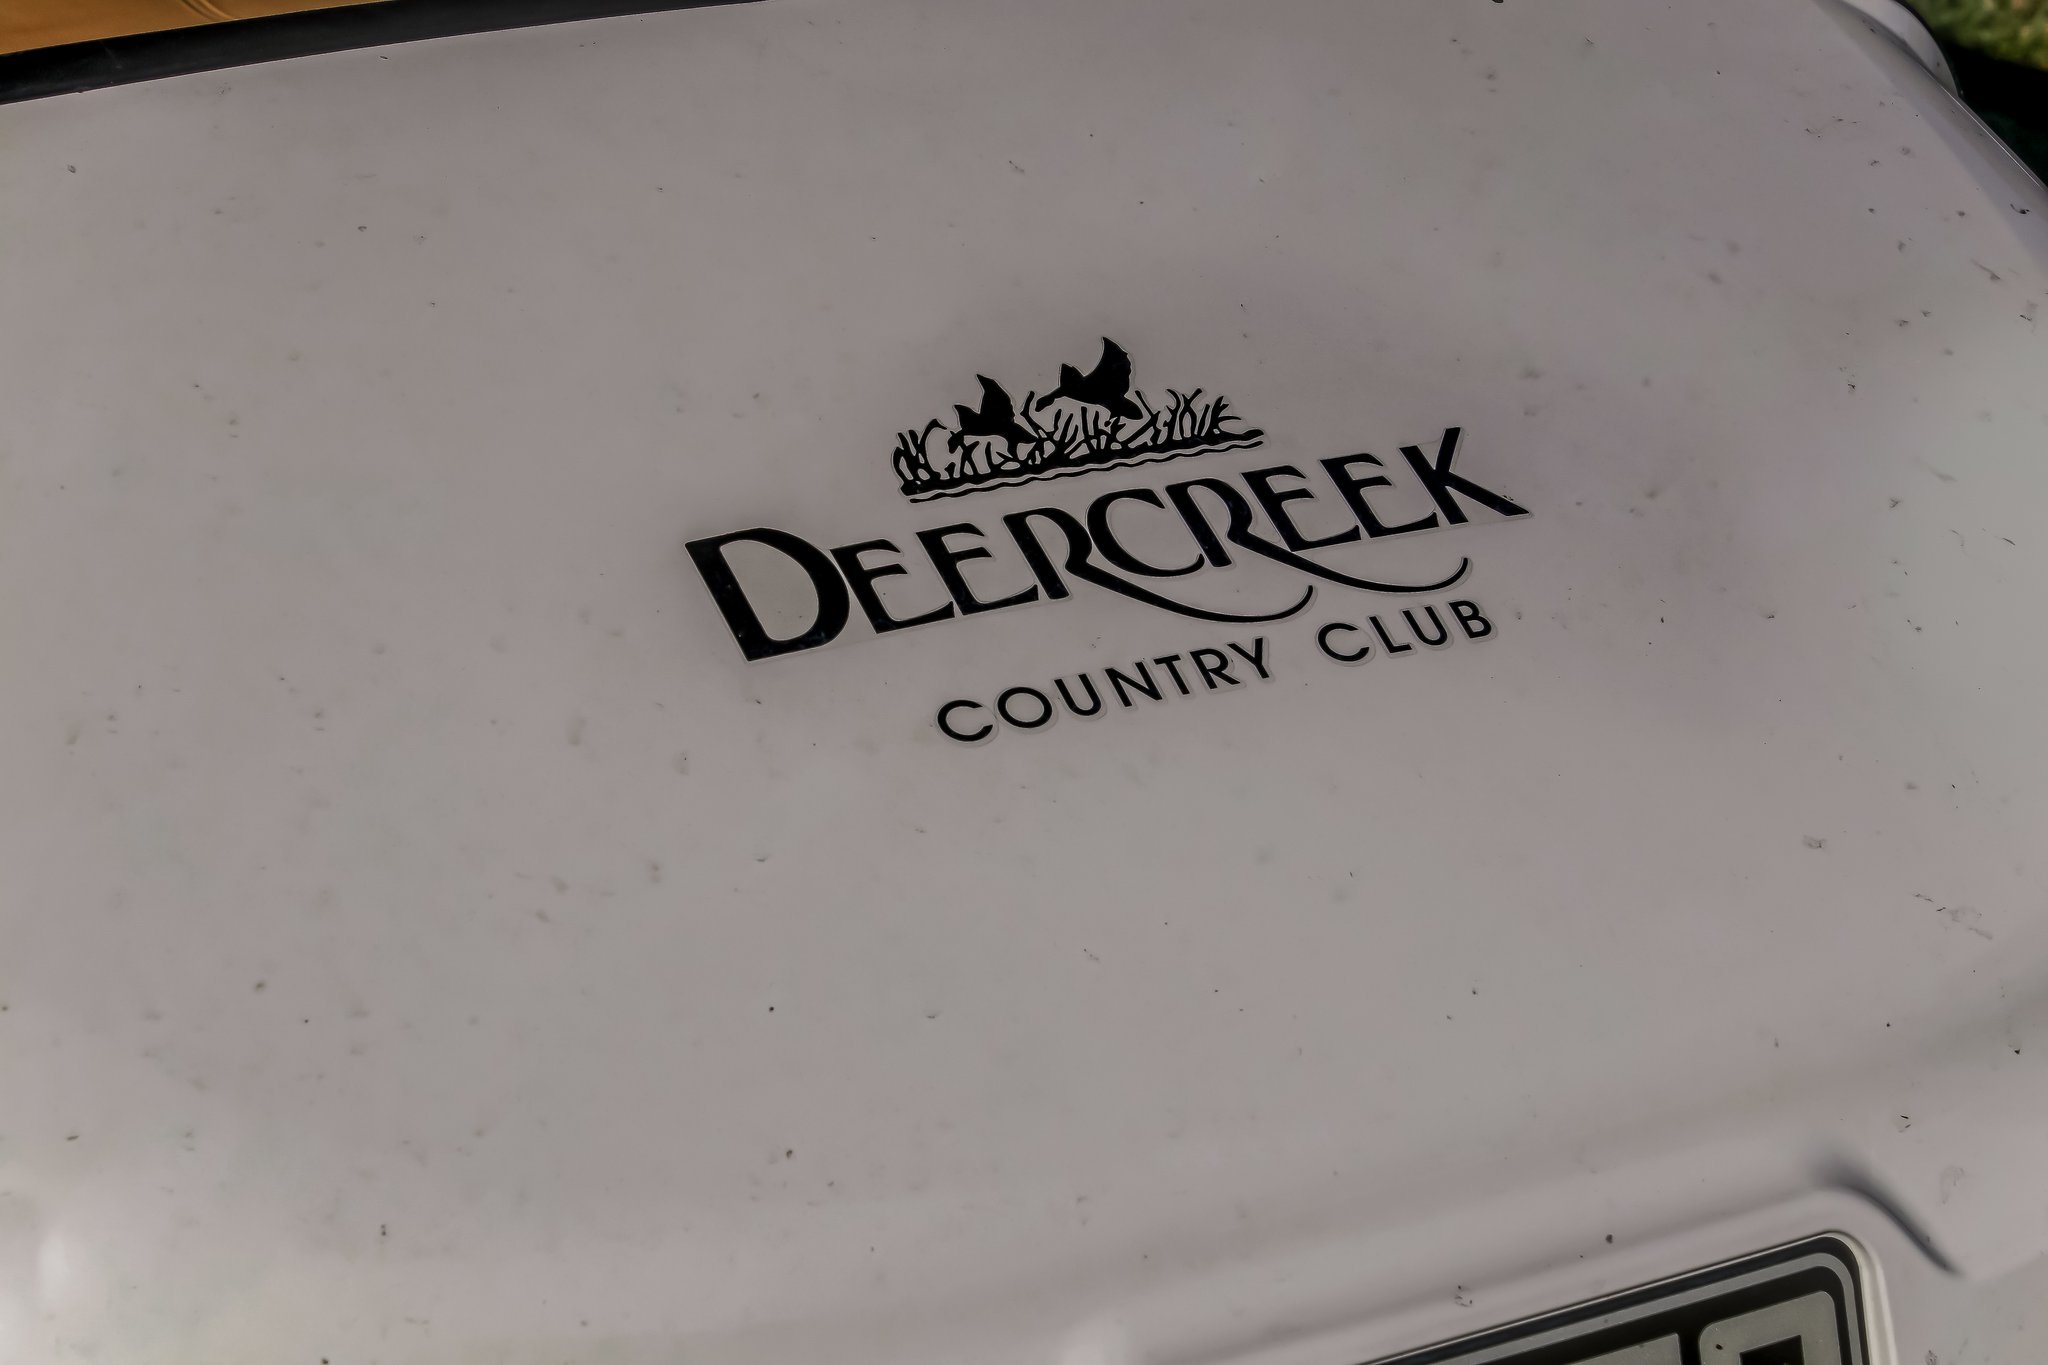 Deercreek